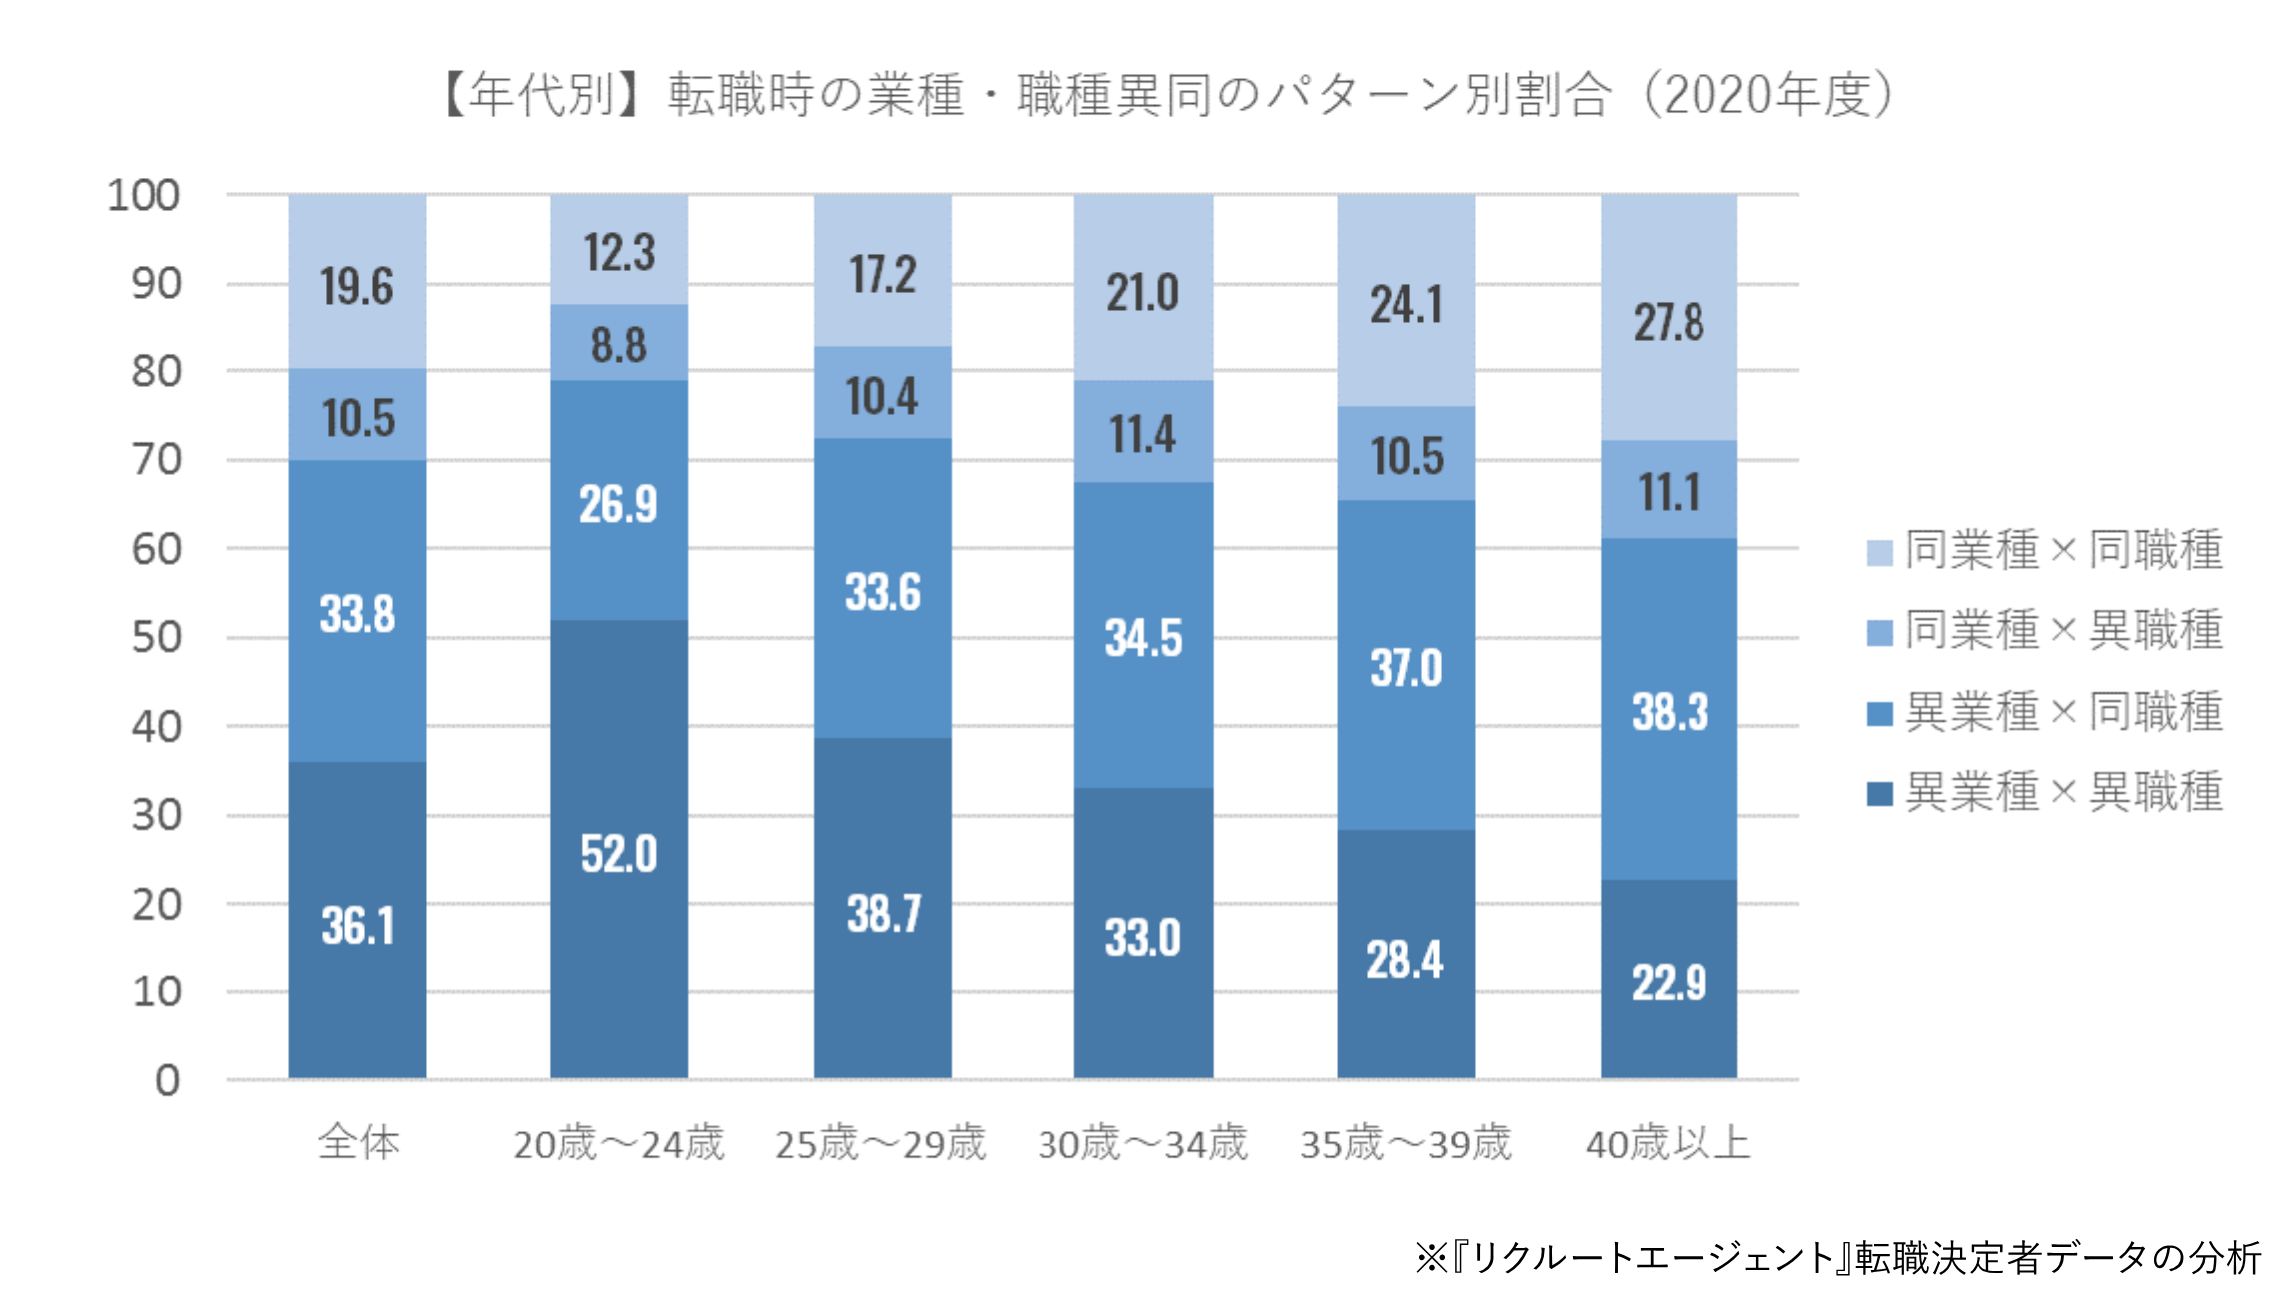 【年代別】転職時の業種・職種異同のパターン別割合(2020年度)